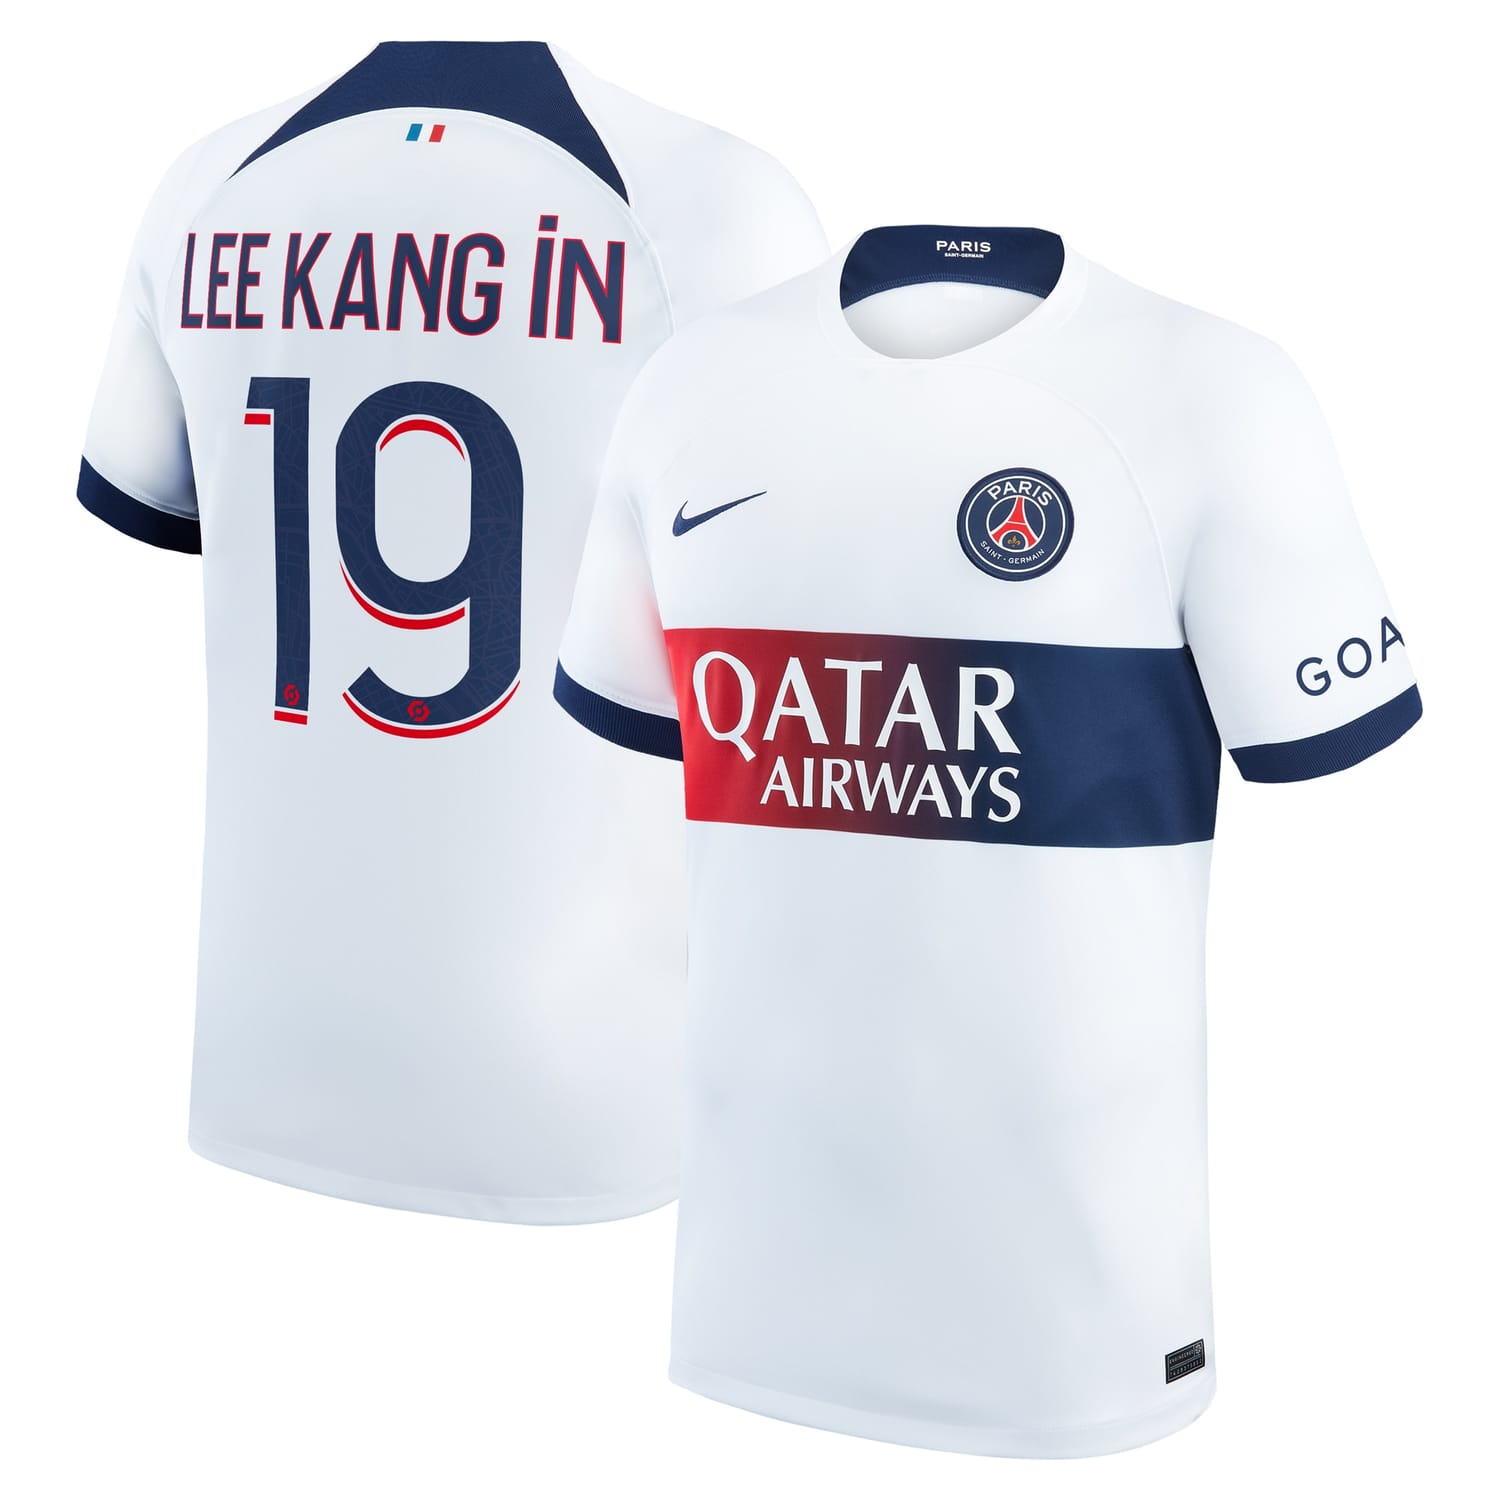 Ligue 1 Paris Saint-Germain Away Jersey Shirt White 2023-24 player Lee Kang In printing for Men